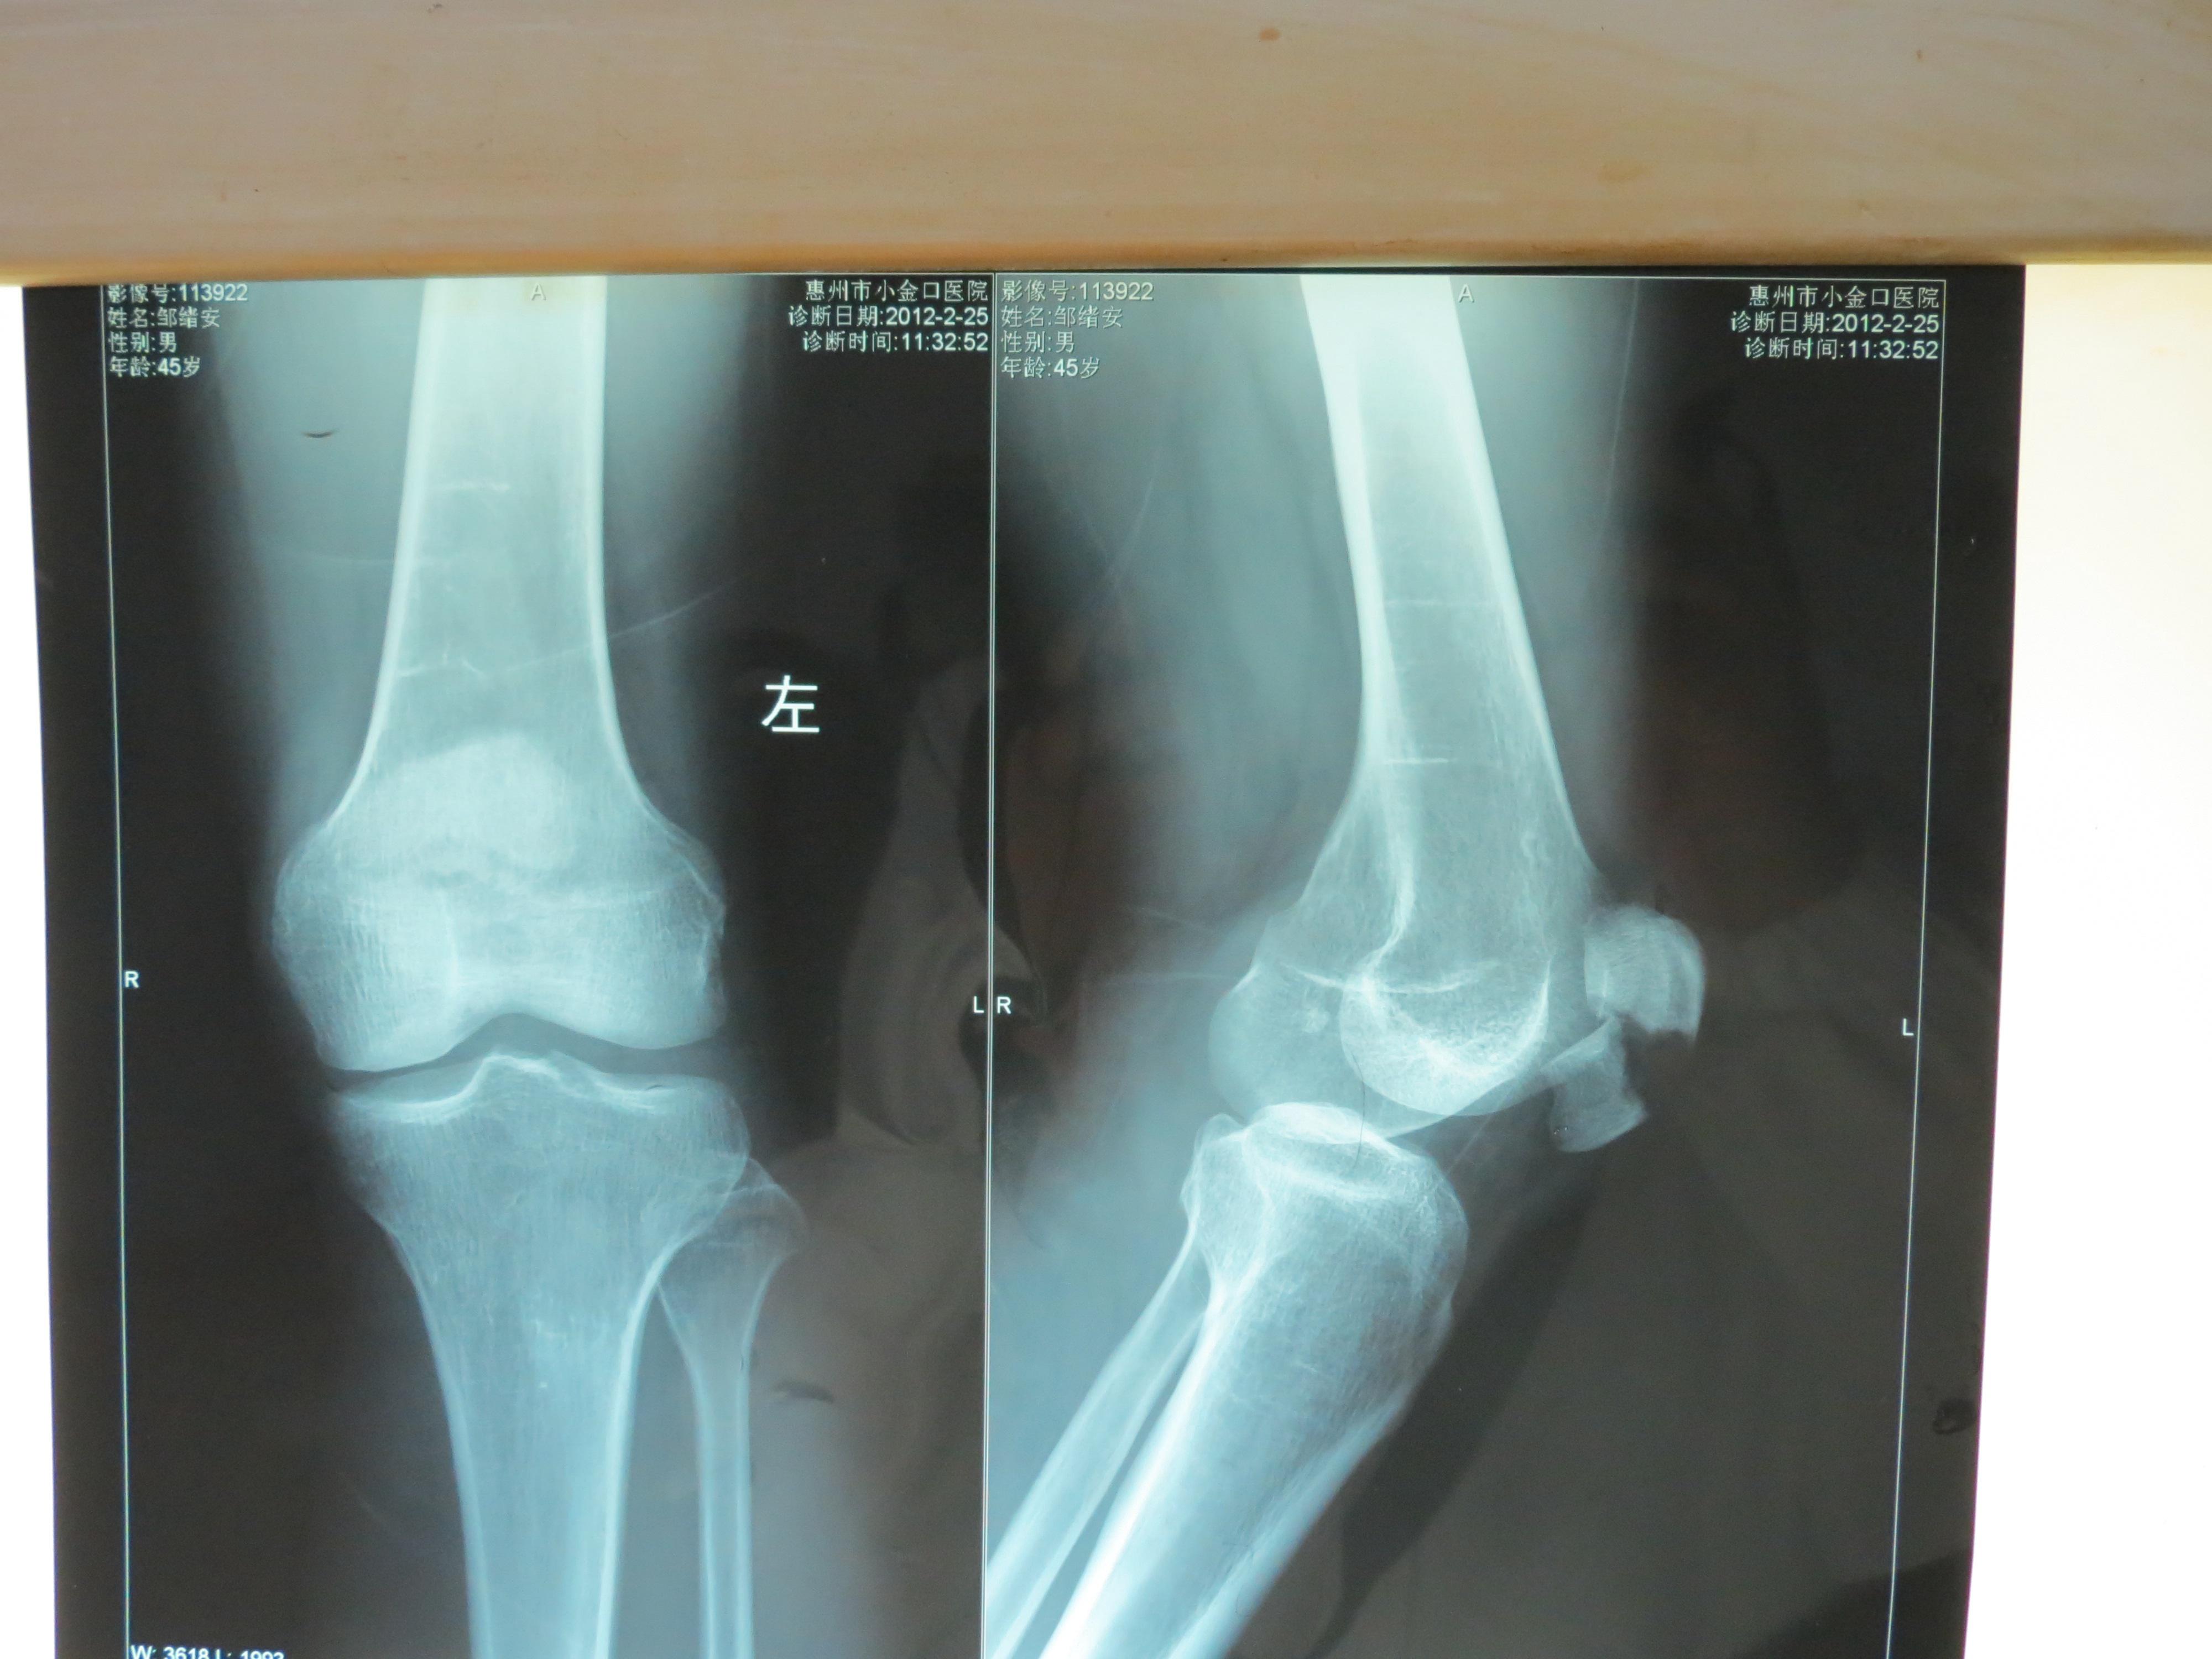 膝盖骨折图片 片子图片